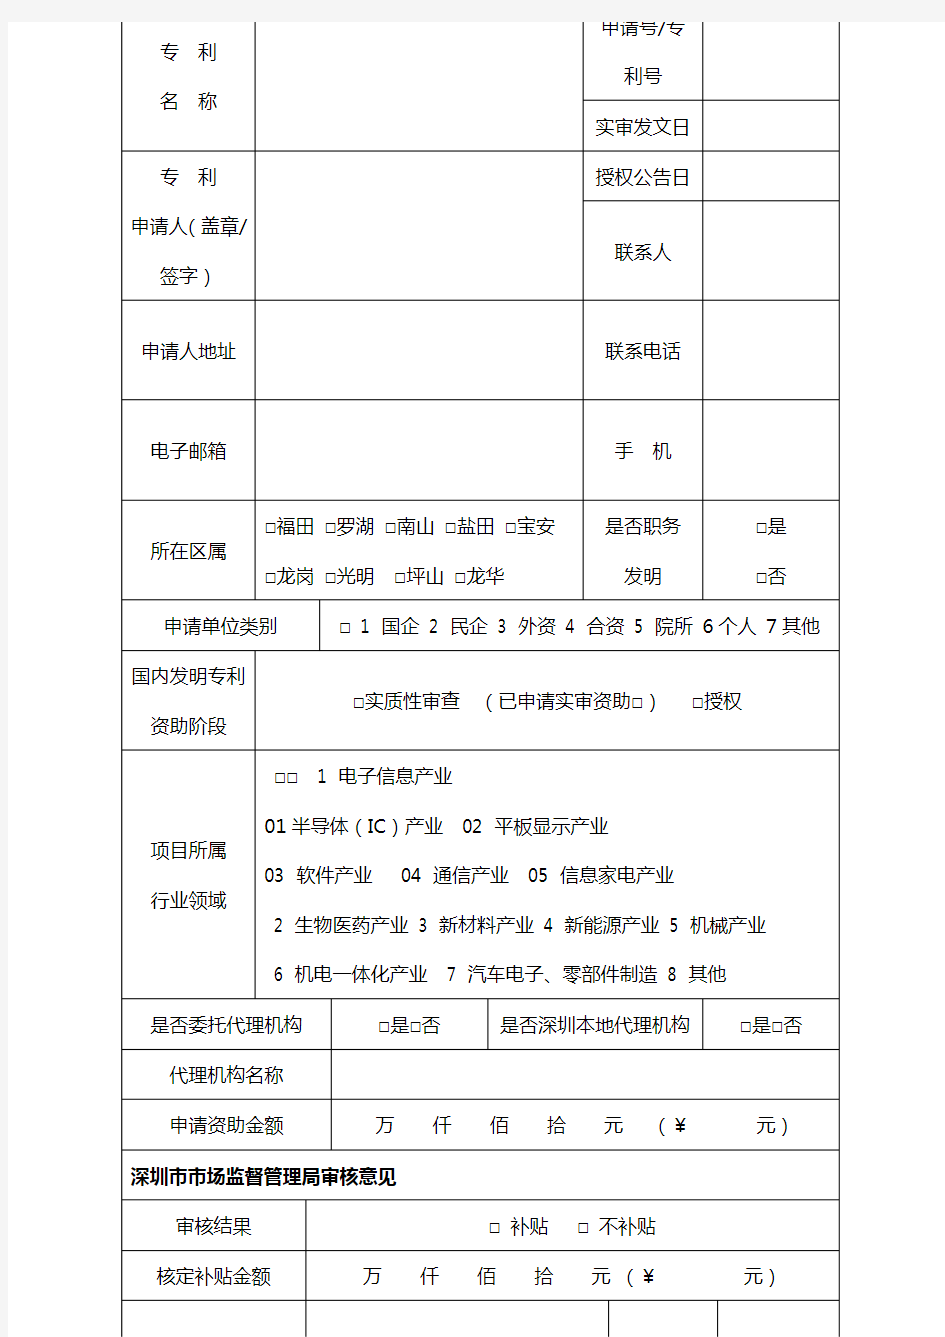 深圳市知识产权专项资金国内发明专利资助申报表